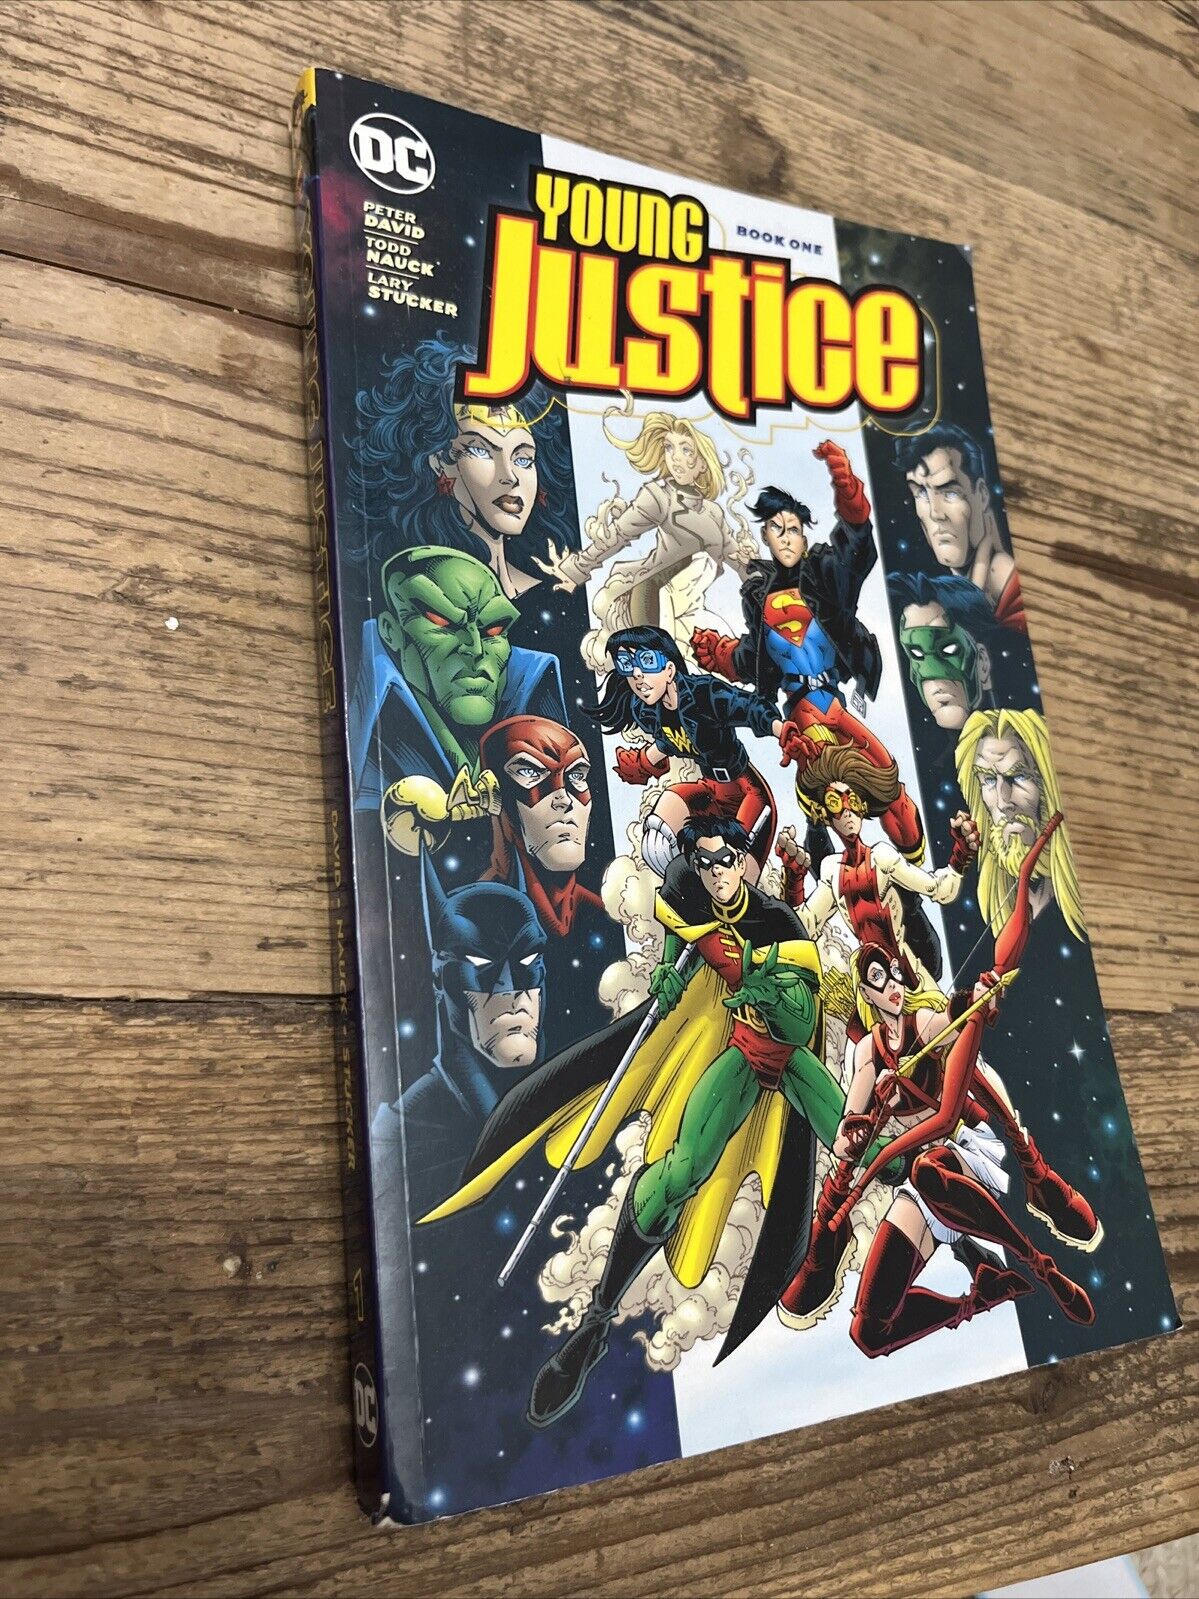 Young Justice #1 (DC Comics June 2017)